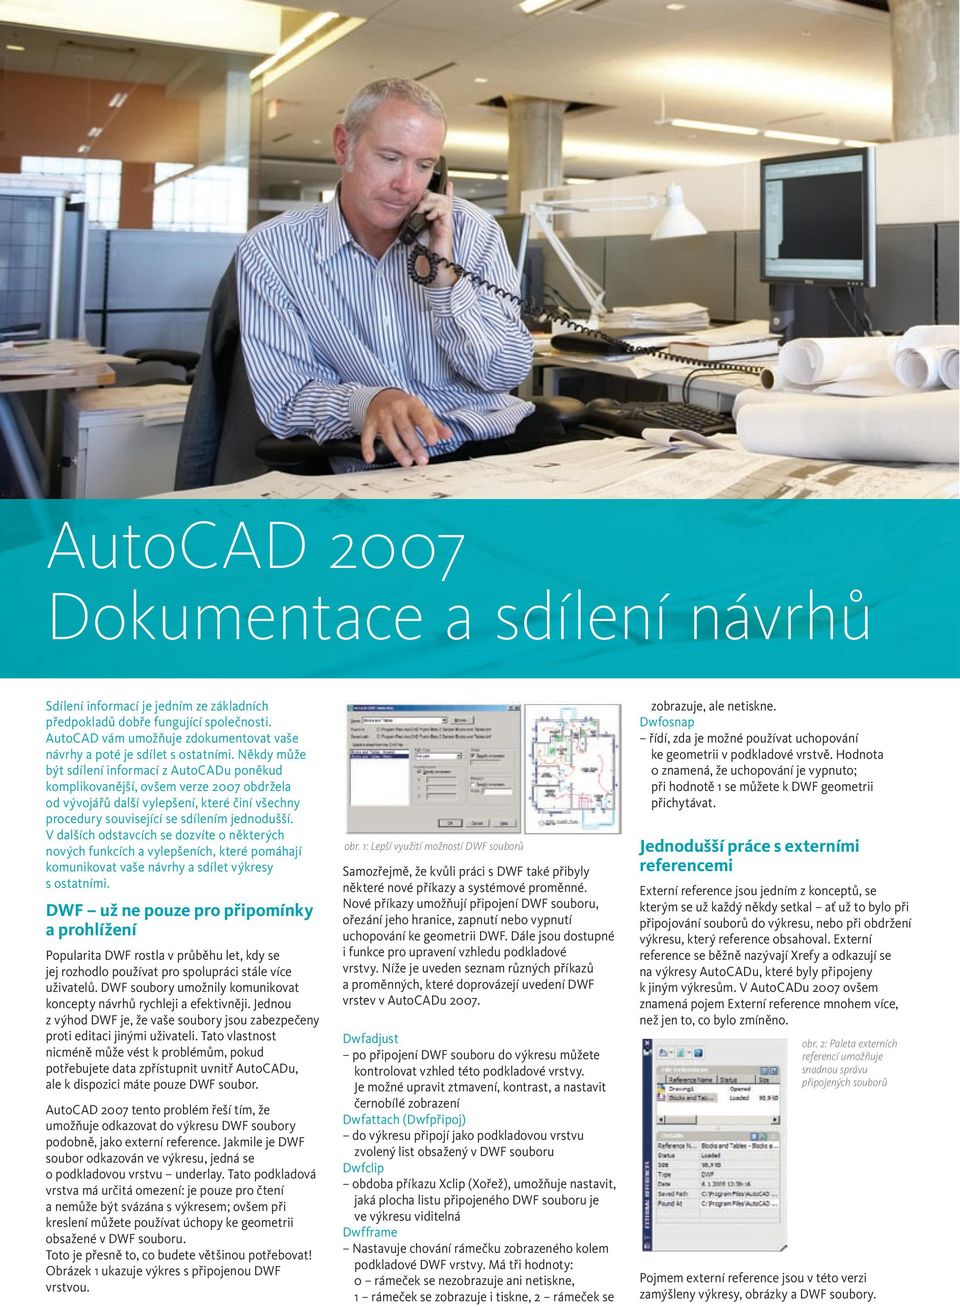 Někdy může být sdílení informací z AutoCADu poněkud komplikovanější, ovšem verze 2007 obdržela od vývojářů další vylepšení, které činí všechny procedury související se sdílením jednodušší.